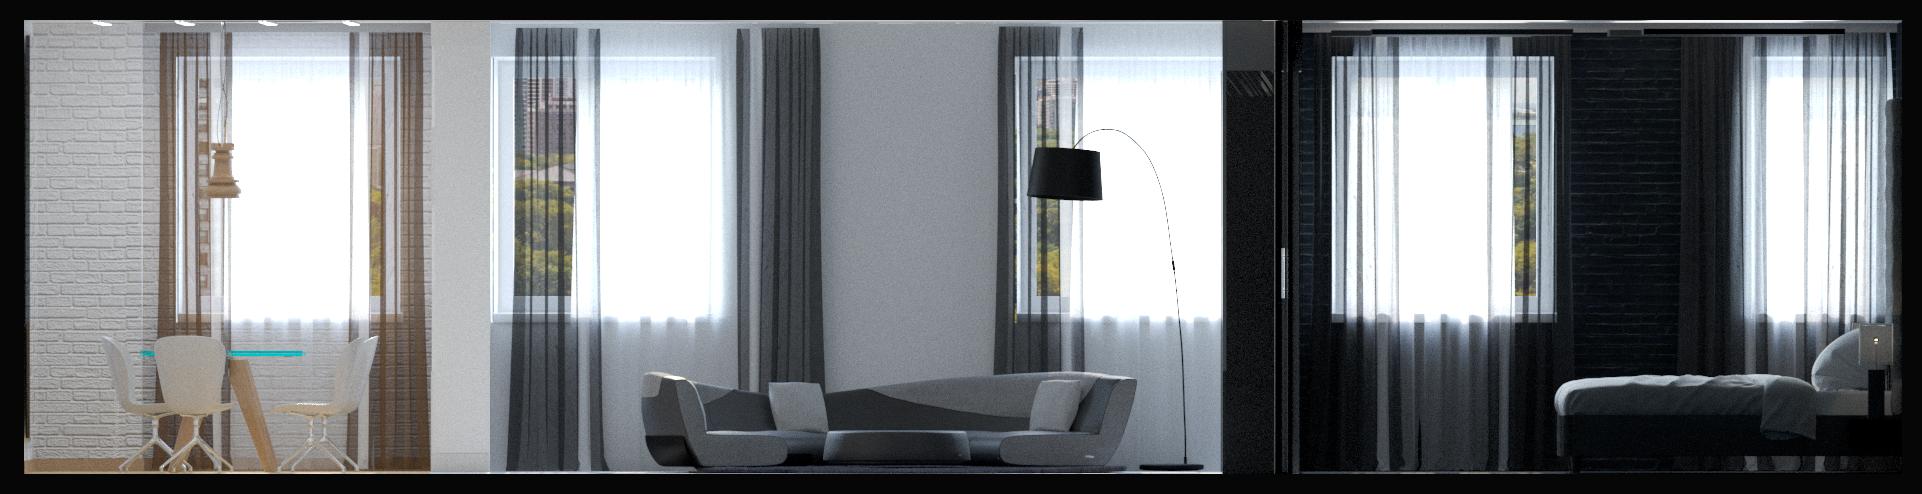 Design quartos no hotel. em 3d max corona render imagem